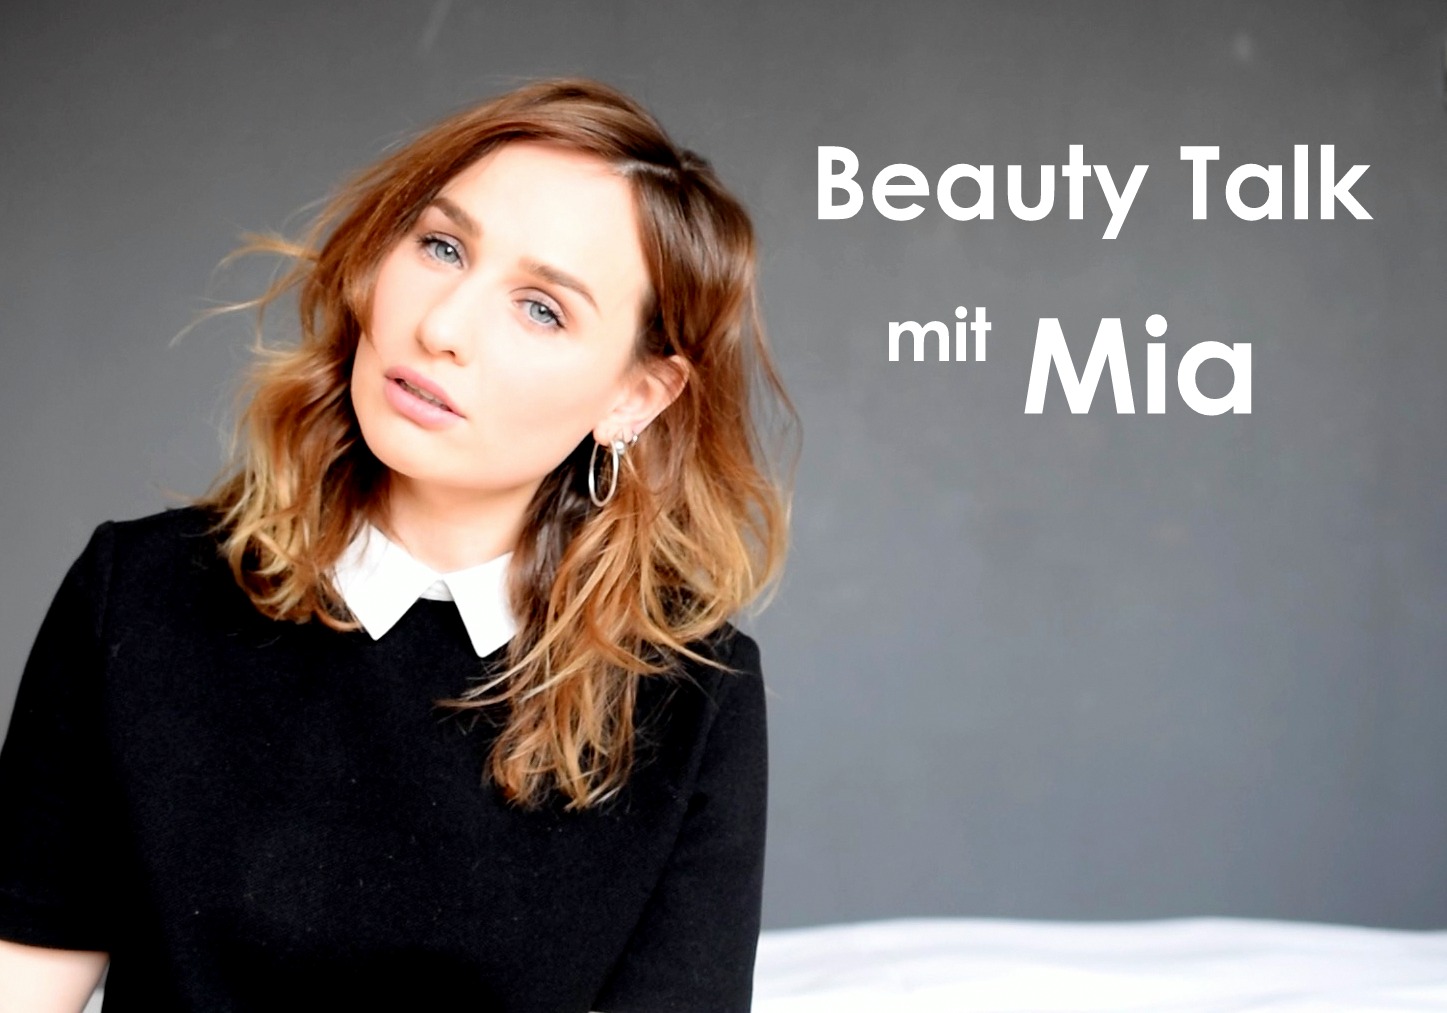 Beauty Talk mit Mia vom Blogzine Alabaster Maedchen im Interview